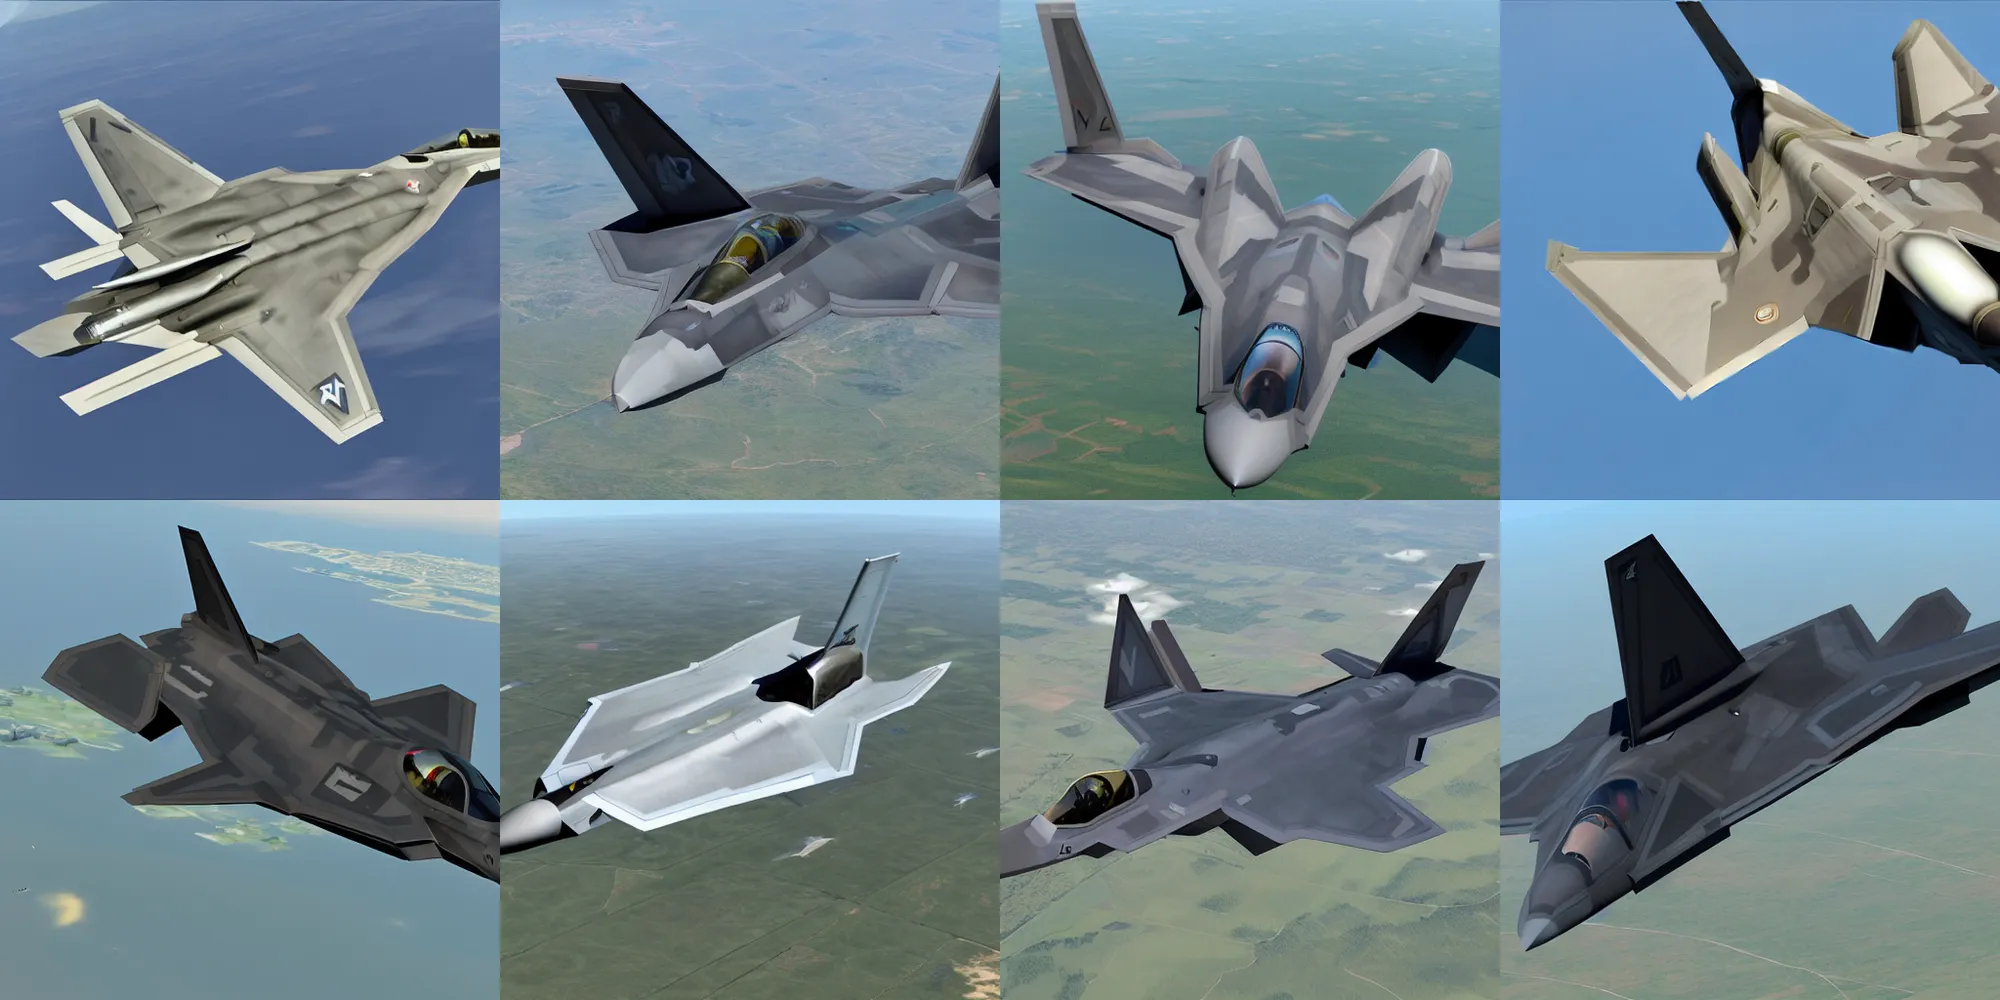 Prompt: f22 raptor, fighter jet, 5th gen fighter, detailed, realistic, 8k